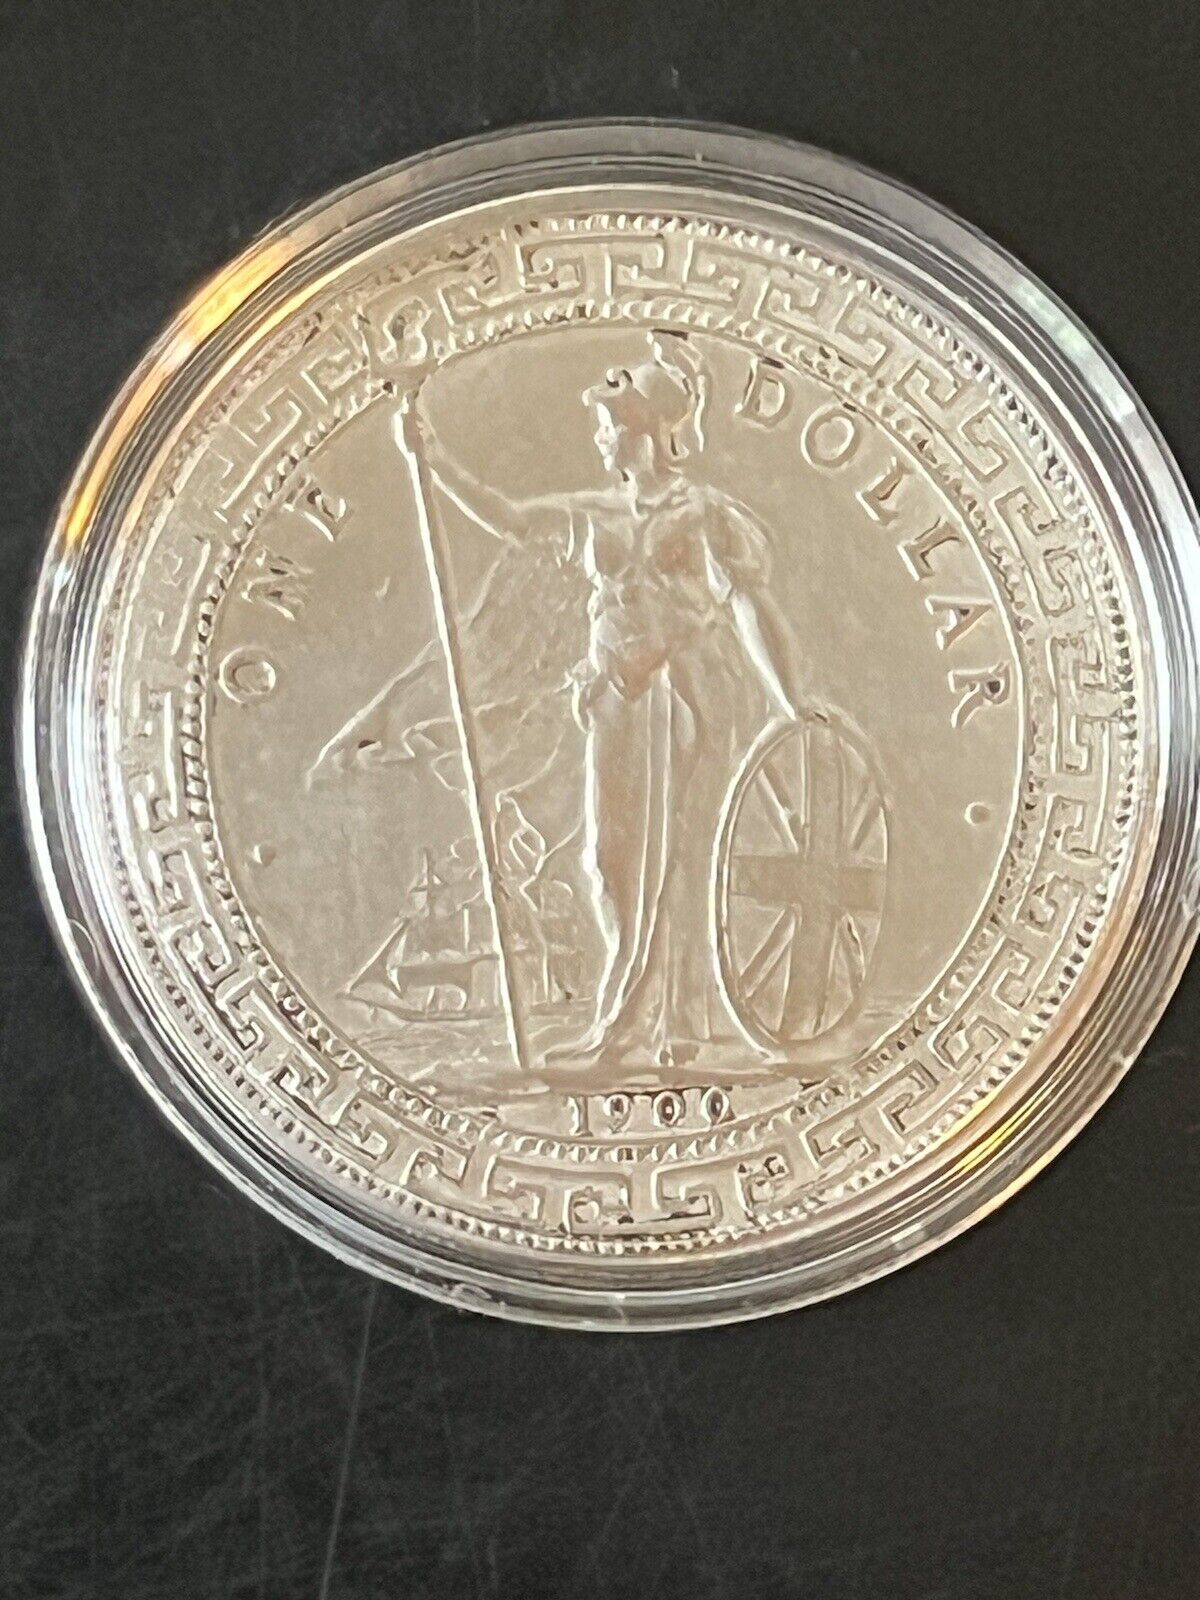 Very Nice 1900 Great Britain Silver Crown Hong Kong/Bombay Trade Dollar